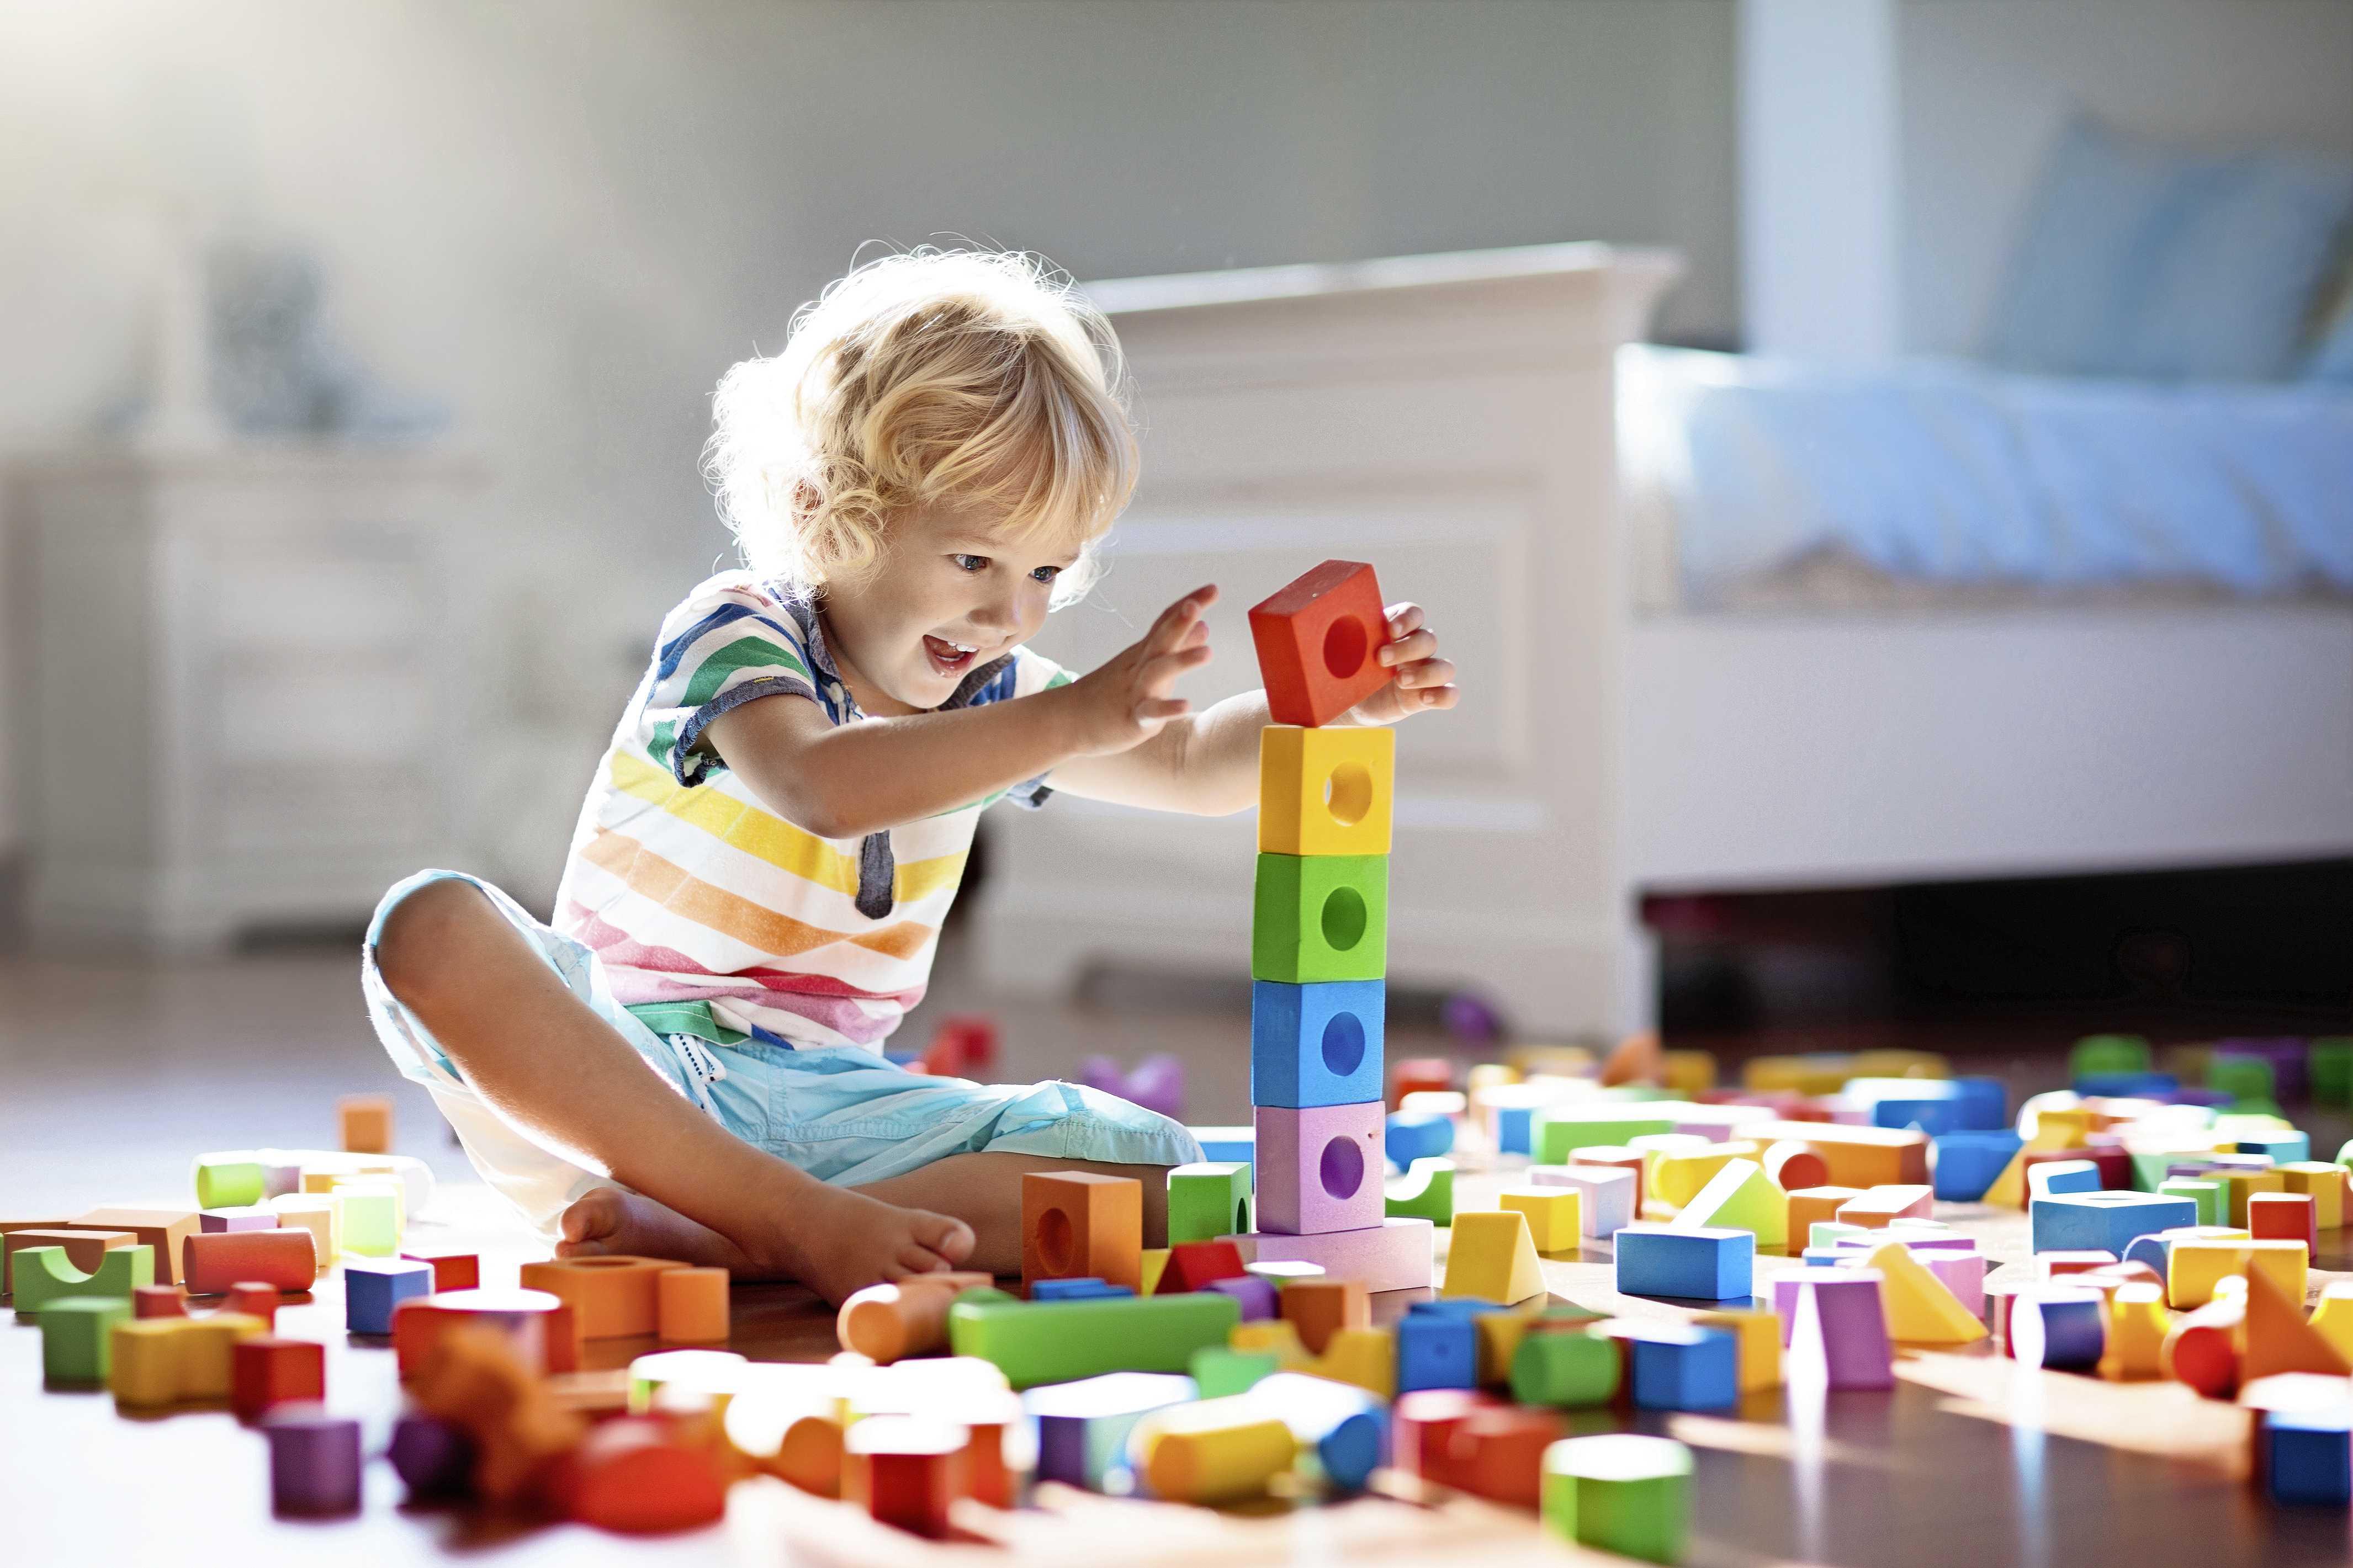 Papa Geurig Opmerkelijk Woonvraag: hoe zorg ik dat de woonkamer geen speelgoedwinkel wordt? |  Lifestyle | Telegraaf.nl